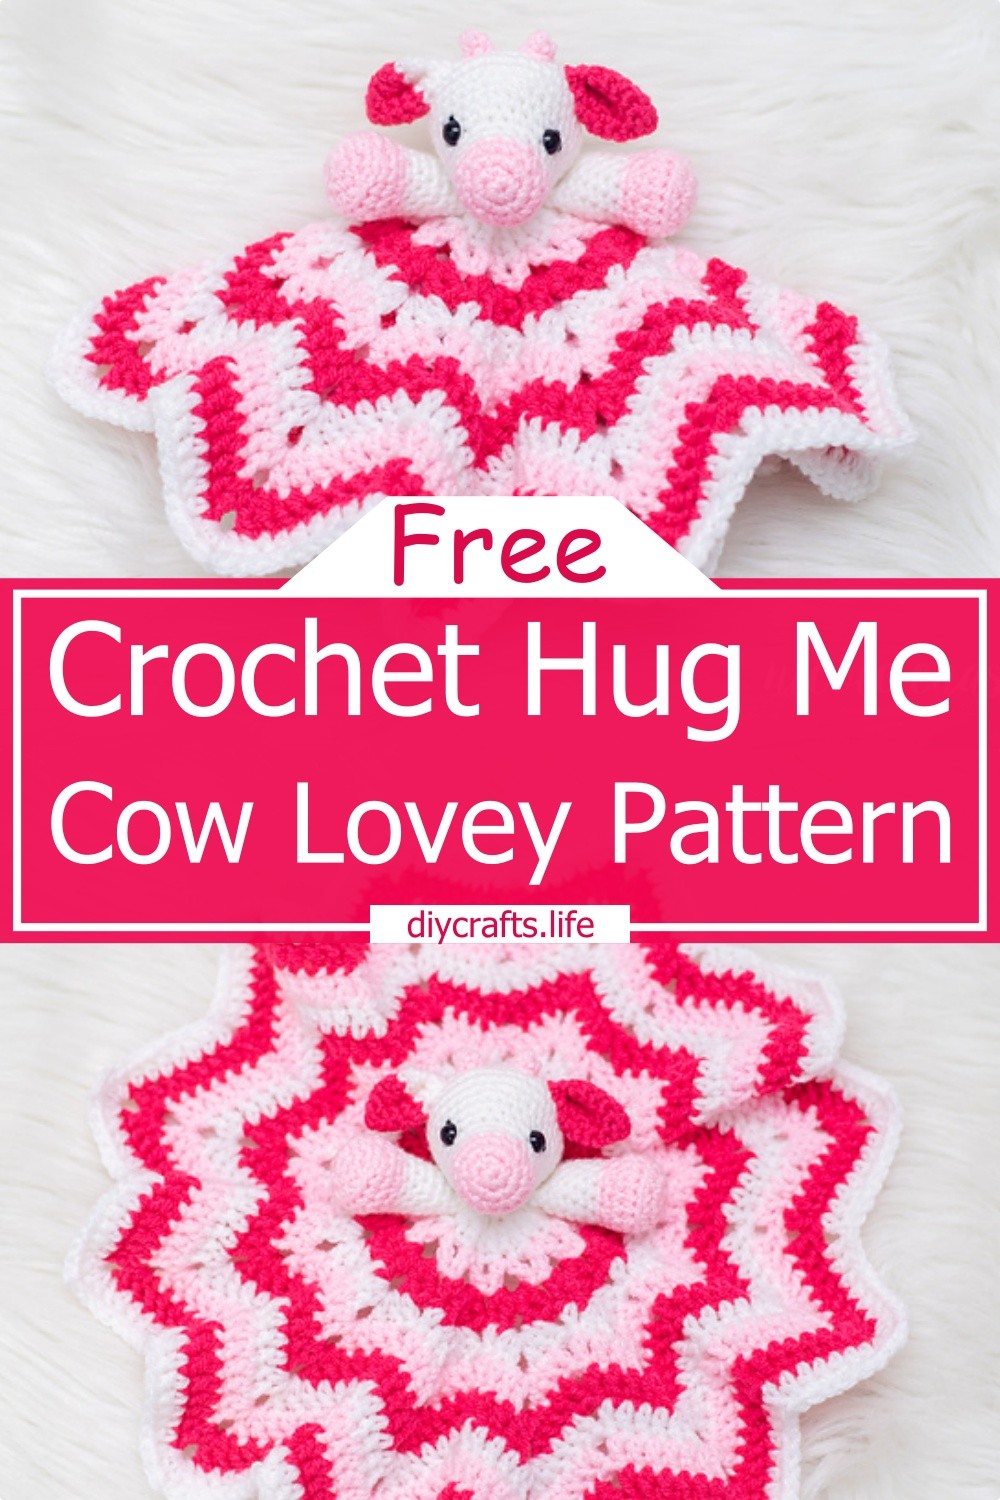 Crochet Hug Me Cow Lovey Pattern